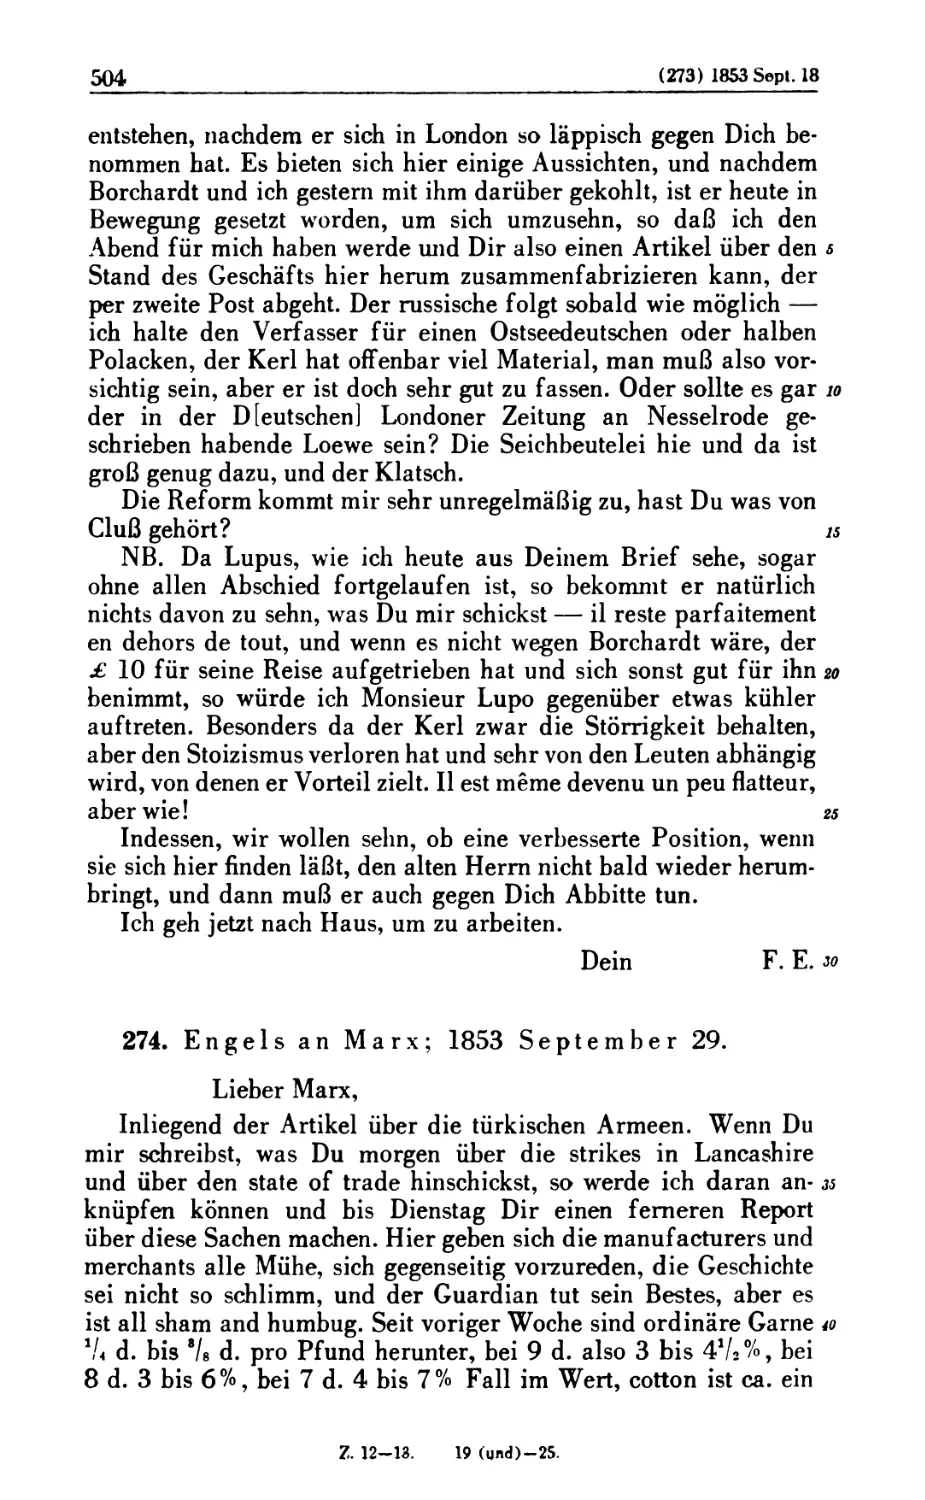 274. Engels an Marx; 1853 September 29